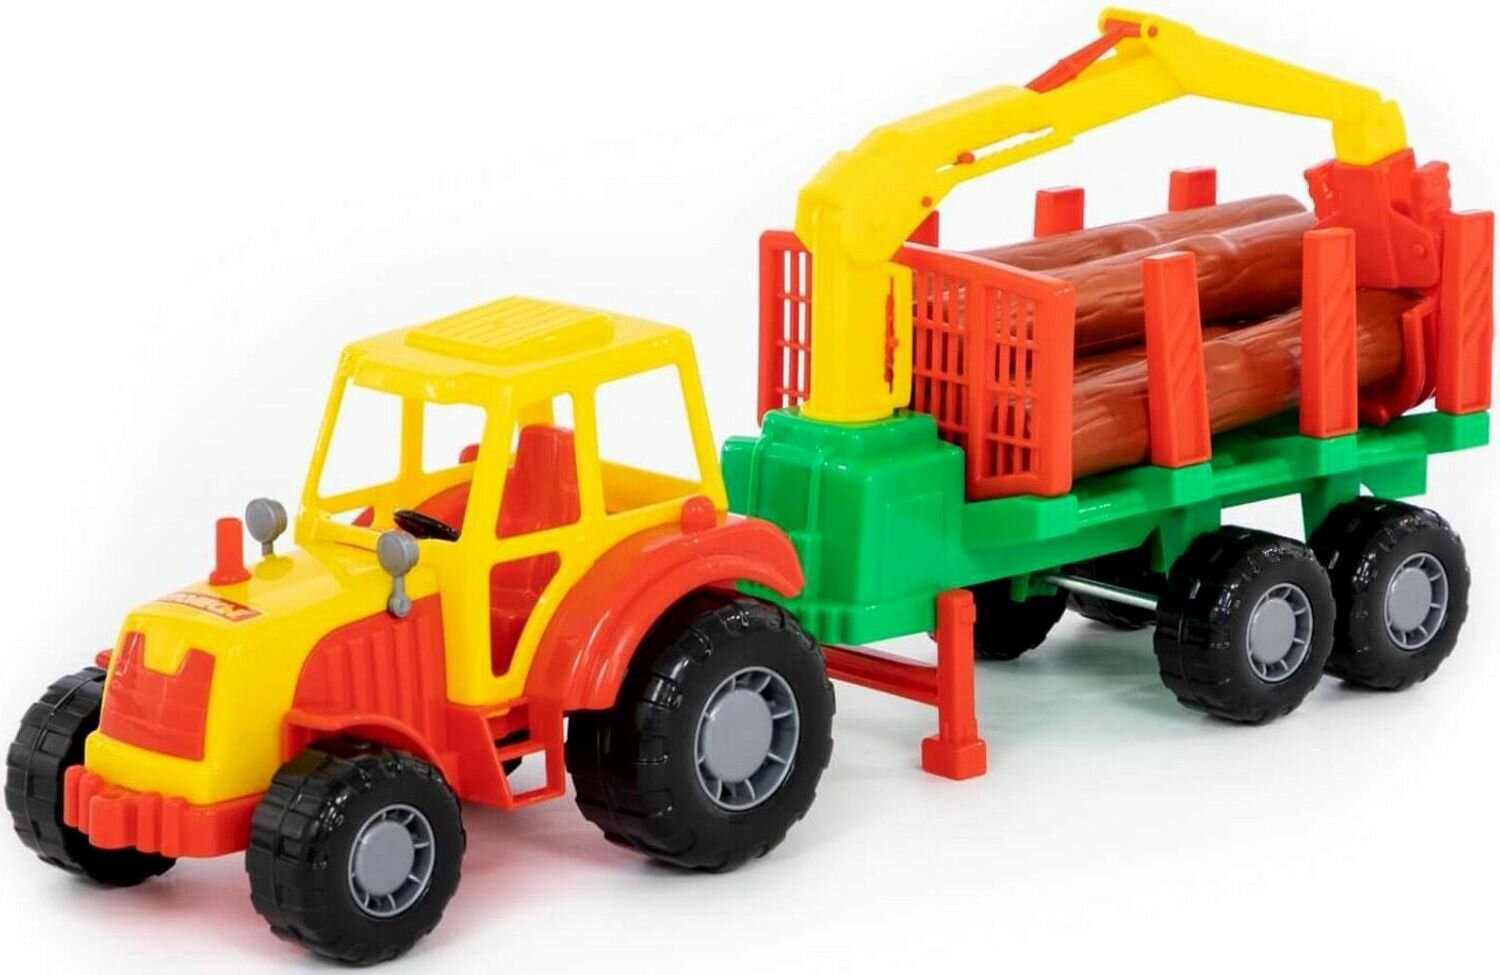 Трактор "Мастер" с полуприцепом-лесовозом и подвижным манипулятором, игрушечная машинка для детей, пластиковая игрушка для песочницы и дома, цвет микс